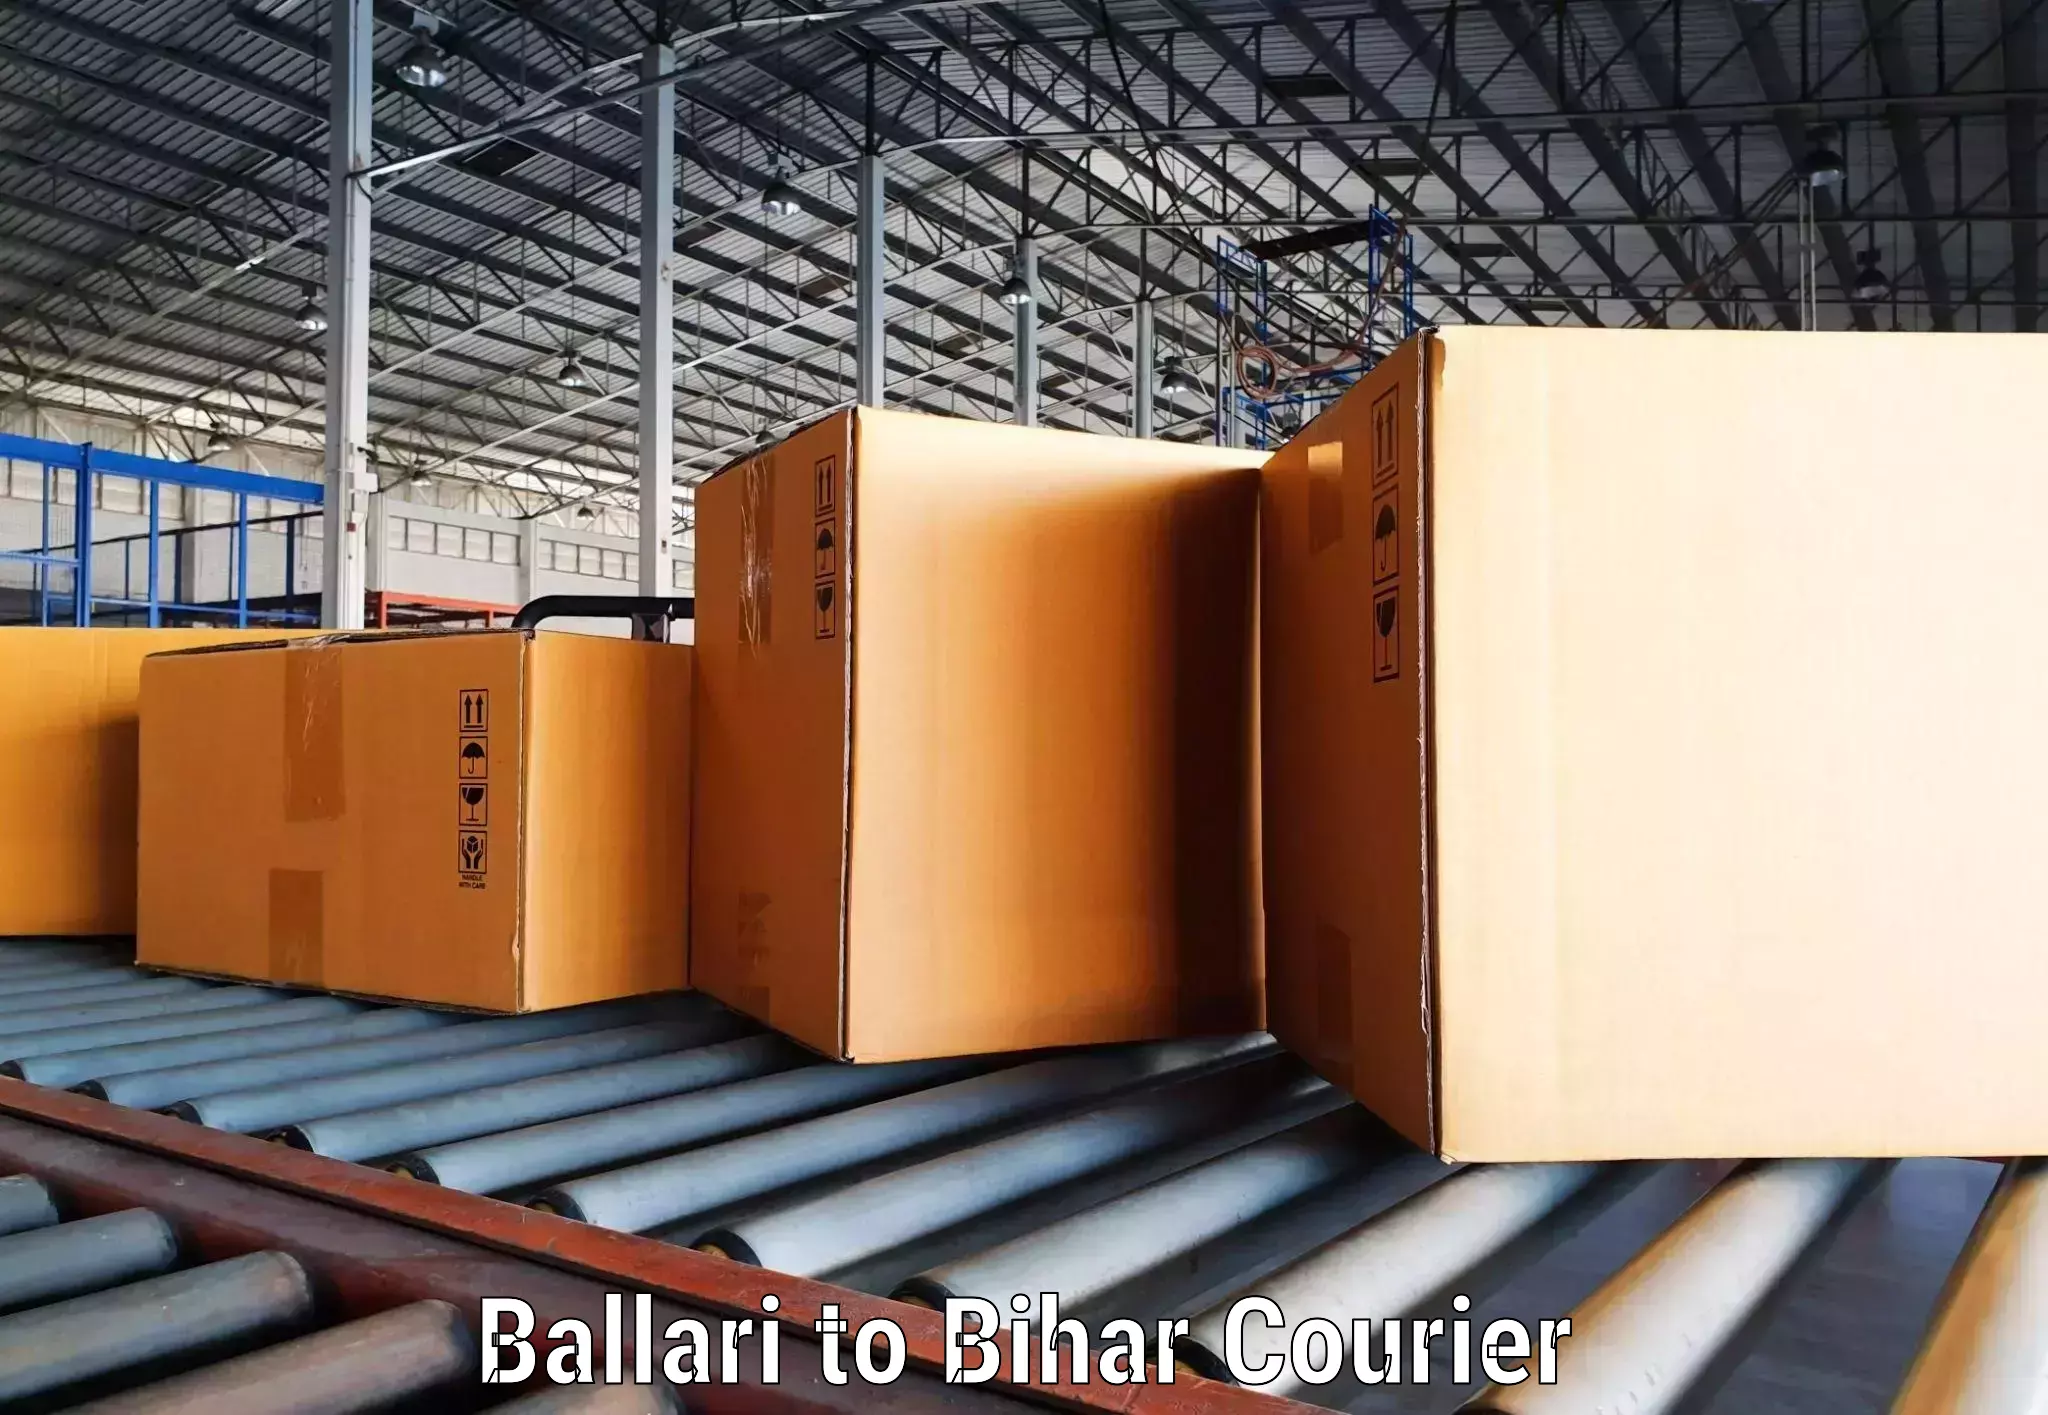 Express logistics service Ballari to Baisi